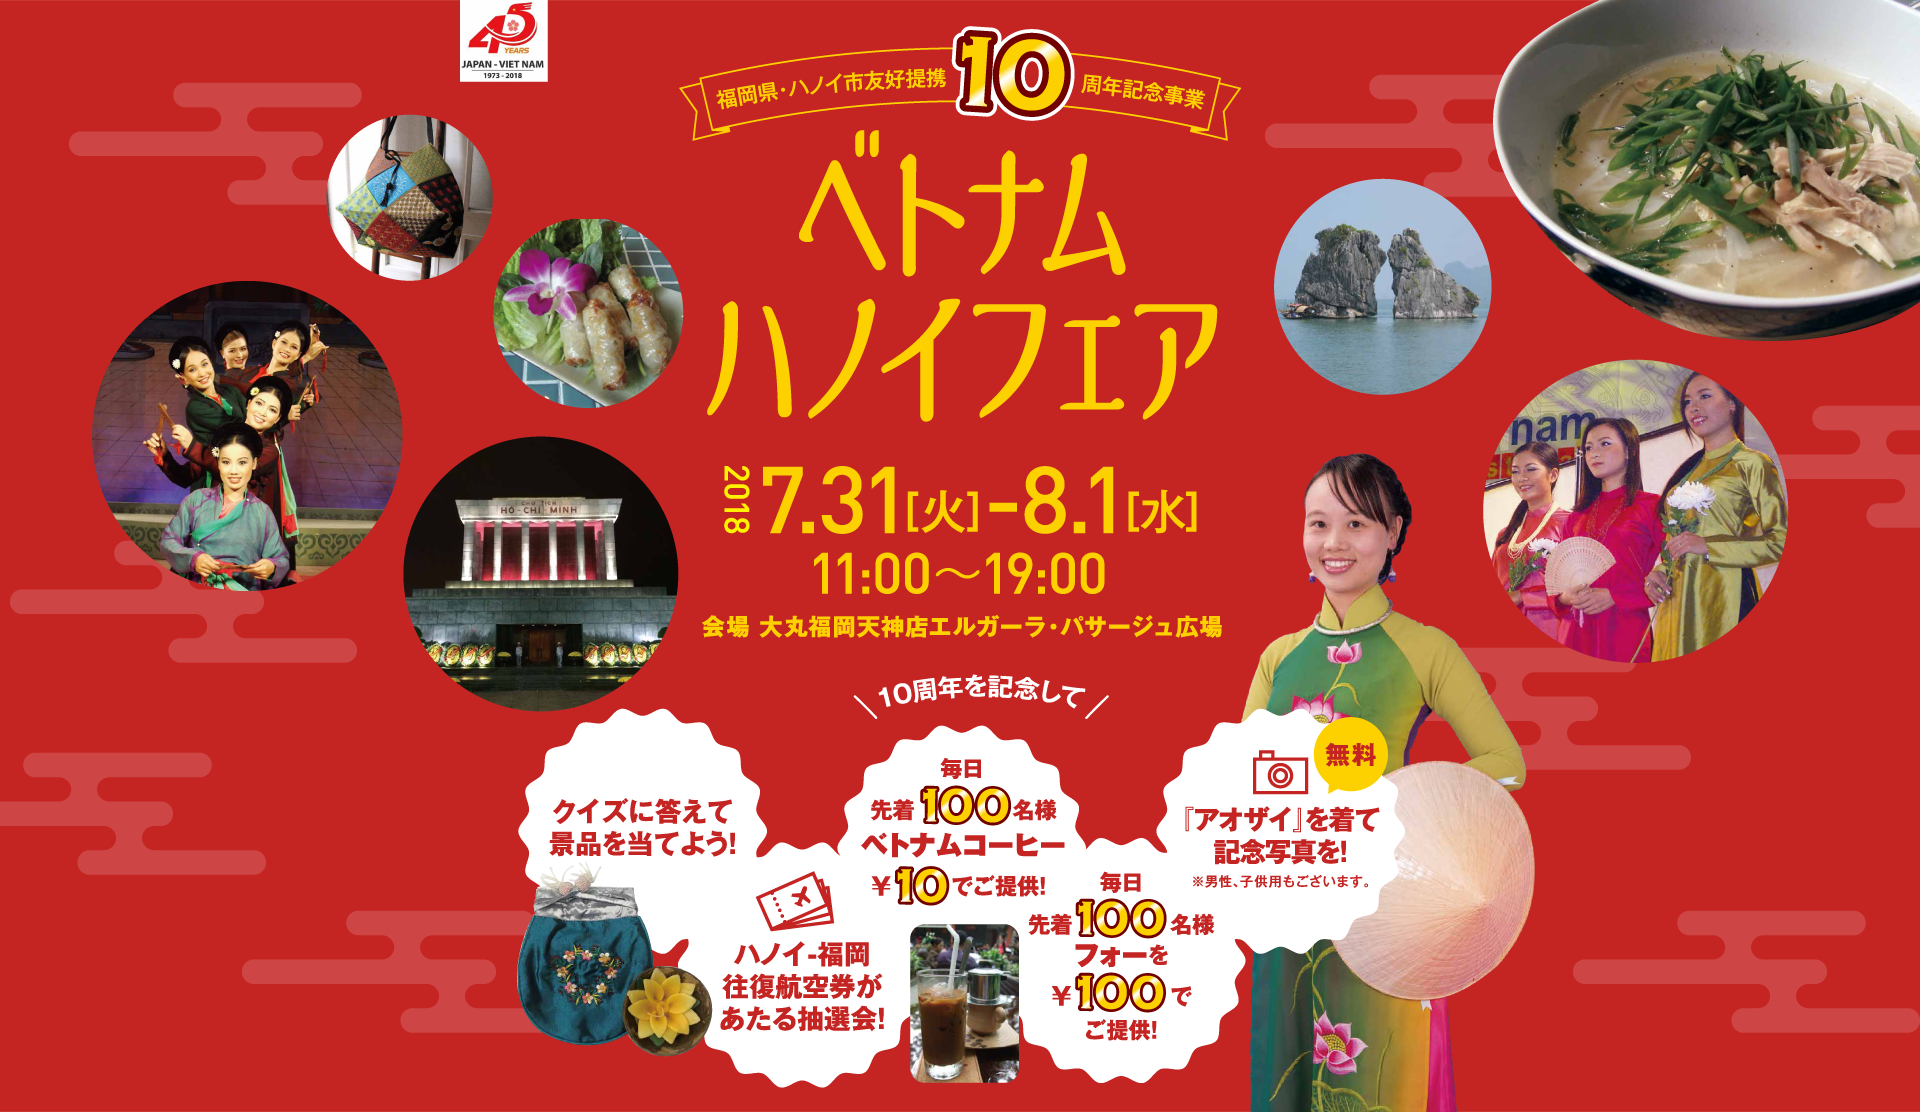 ベトナムハノイフェア 18 7 31 8 1 福岡県 ハノイ市友好提携10周年記念事業